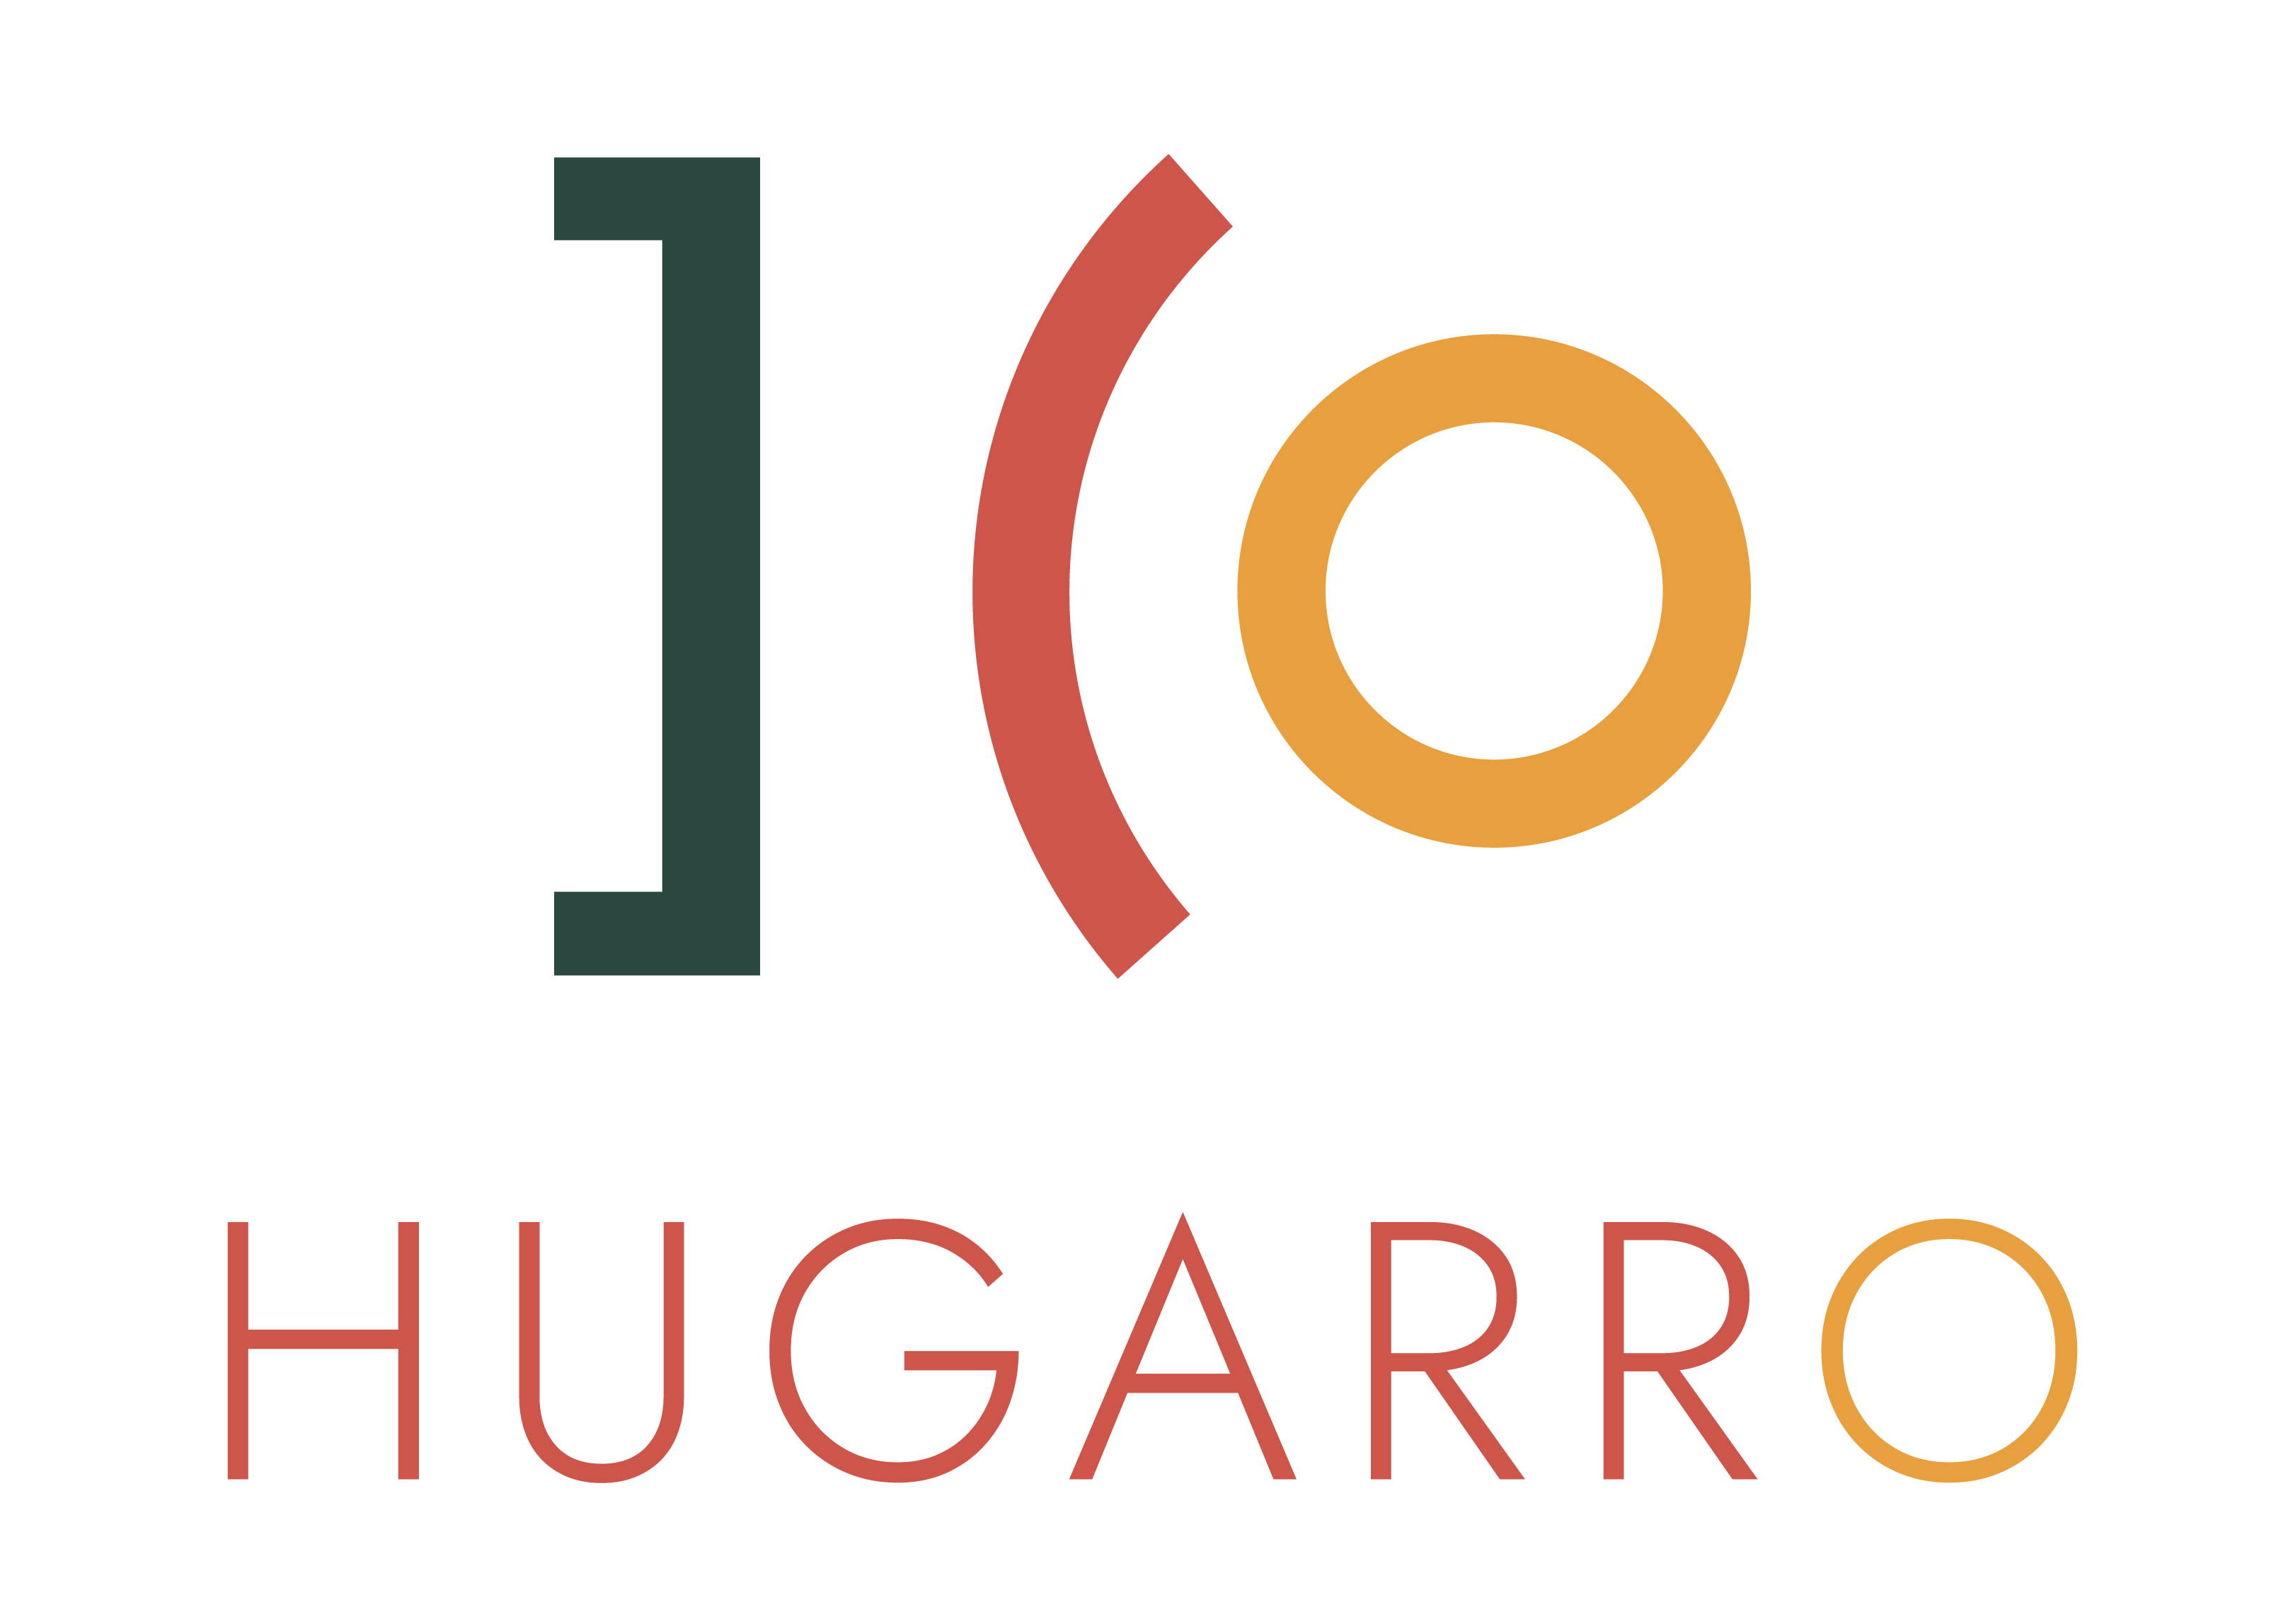 Hugarro klantverhalen,webdesign succesverhalen,tevreden Hugarro klanten,website project referenties,digitale transformatie getuigenissen,Hugarro projectresultaten,klanttevredenheid Hugarro,webontwikkeling casestudies,Hugarro samenwerkingen,online oplossingen referenties,referenties